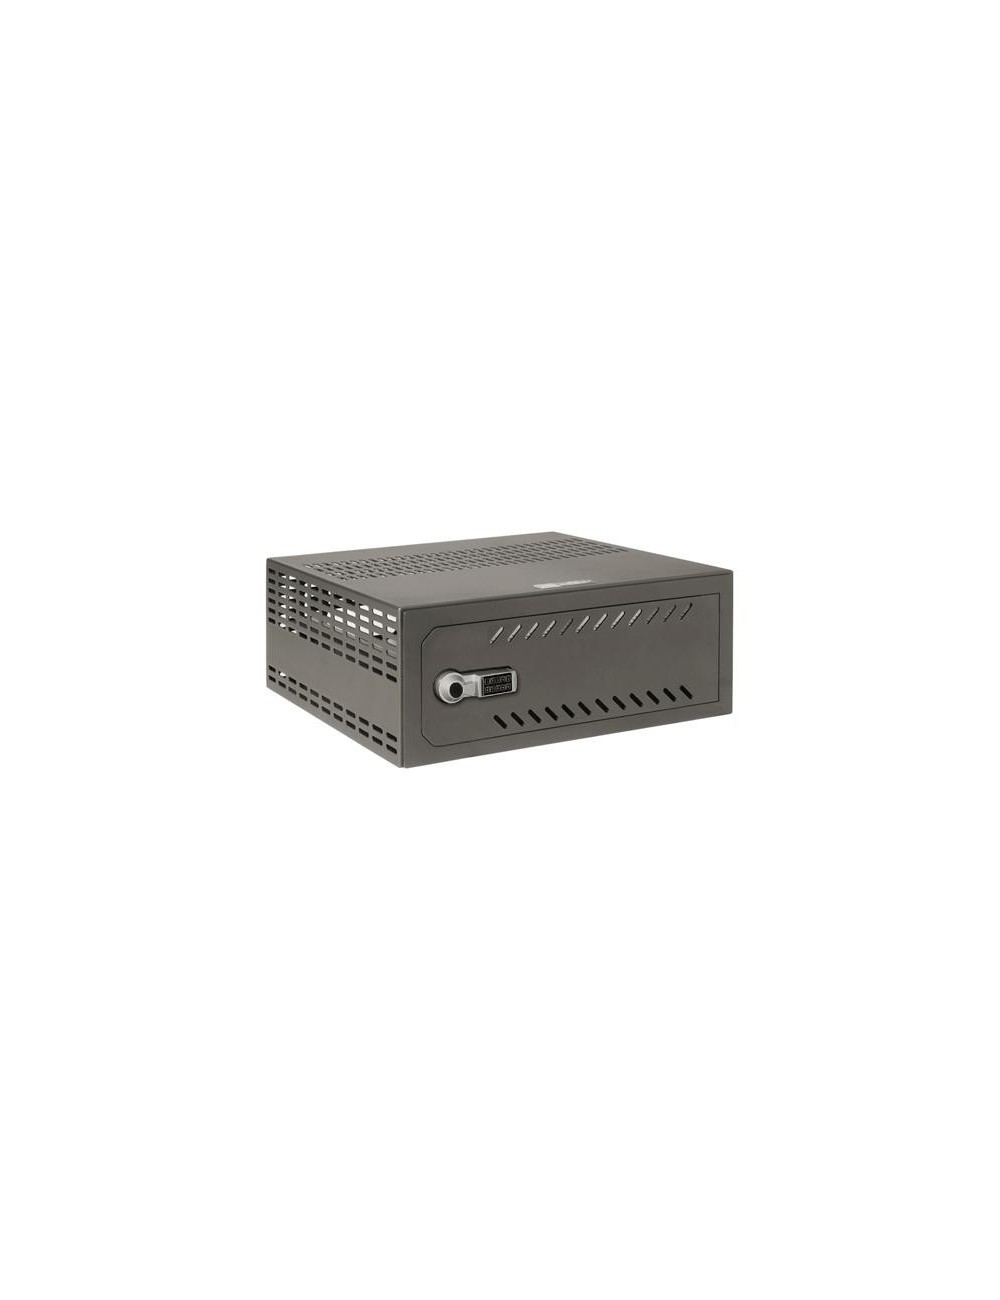 Cassaforte per DVR da 1U rack - Specifico per CCTV - chiusura elettronica 